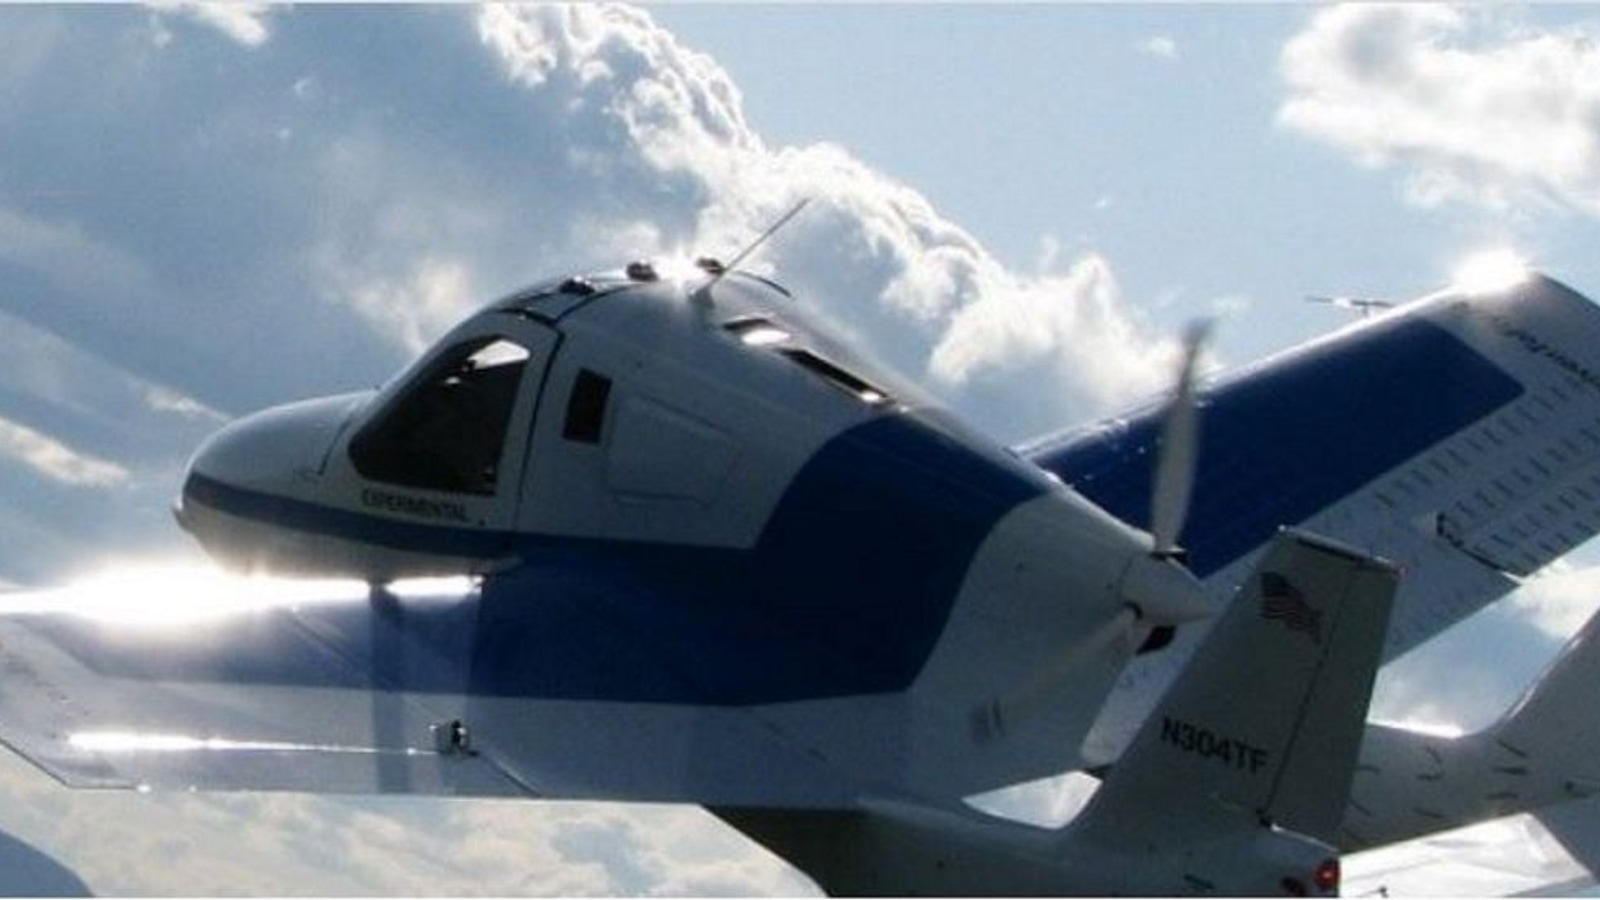 Terrafugia prototype in flight